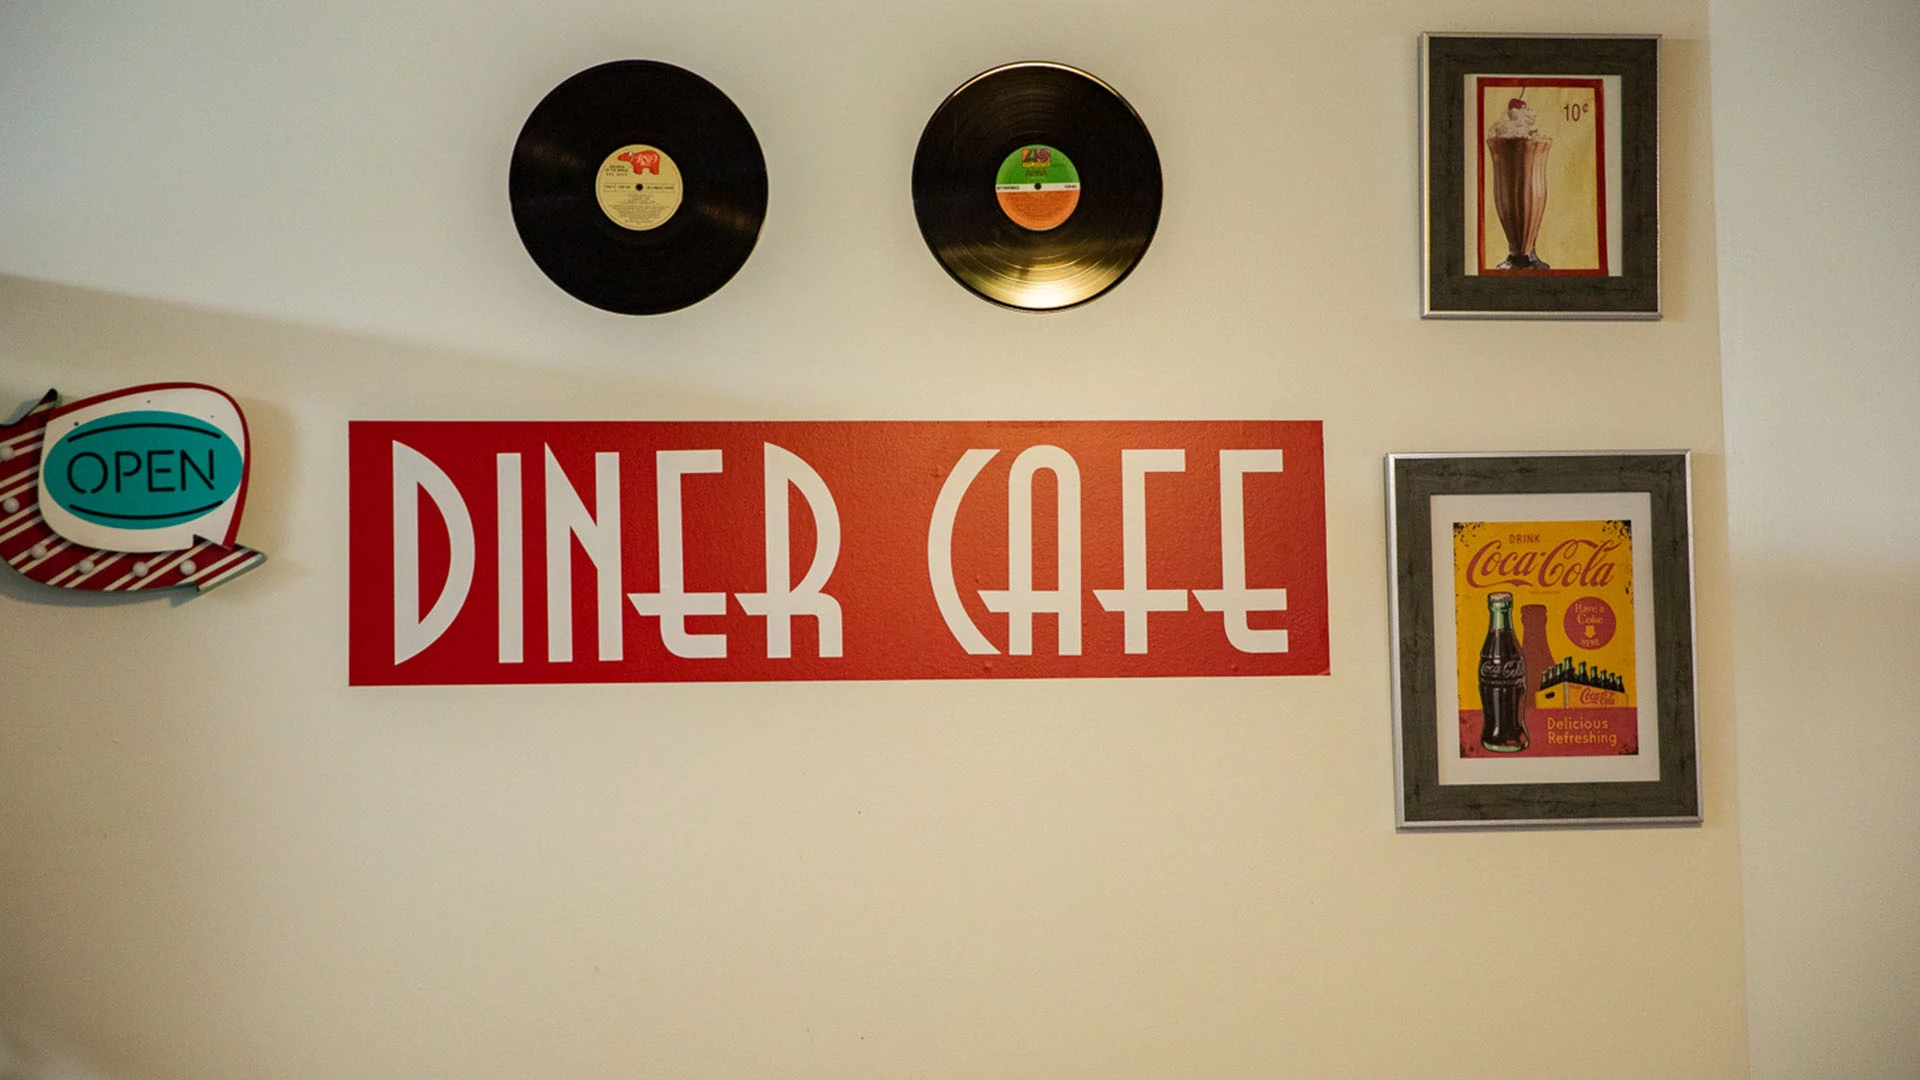 Diner Cafe on site